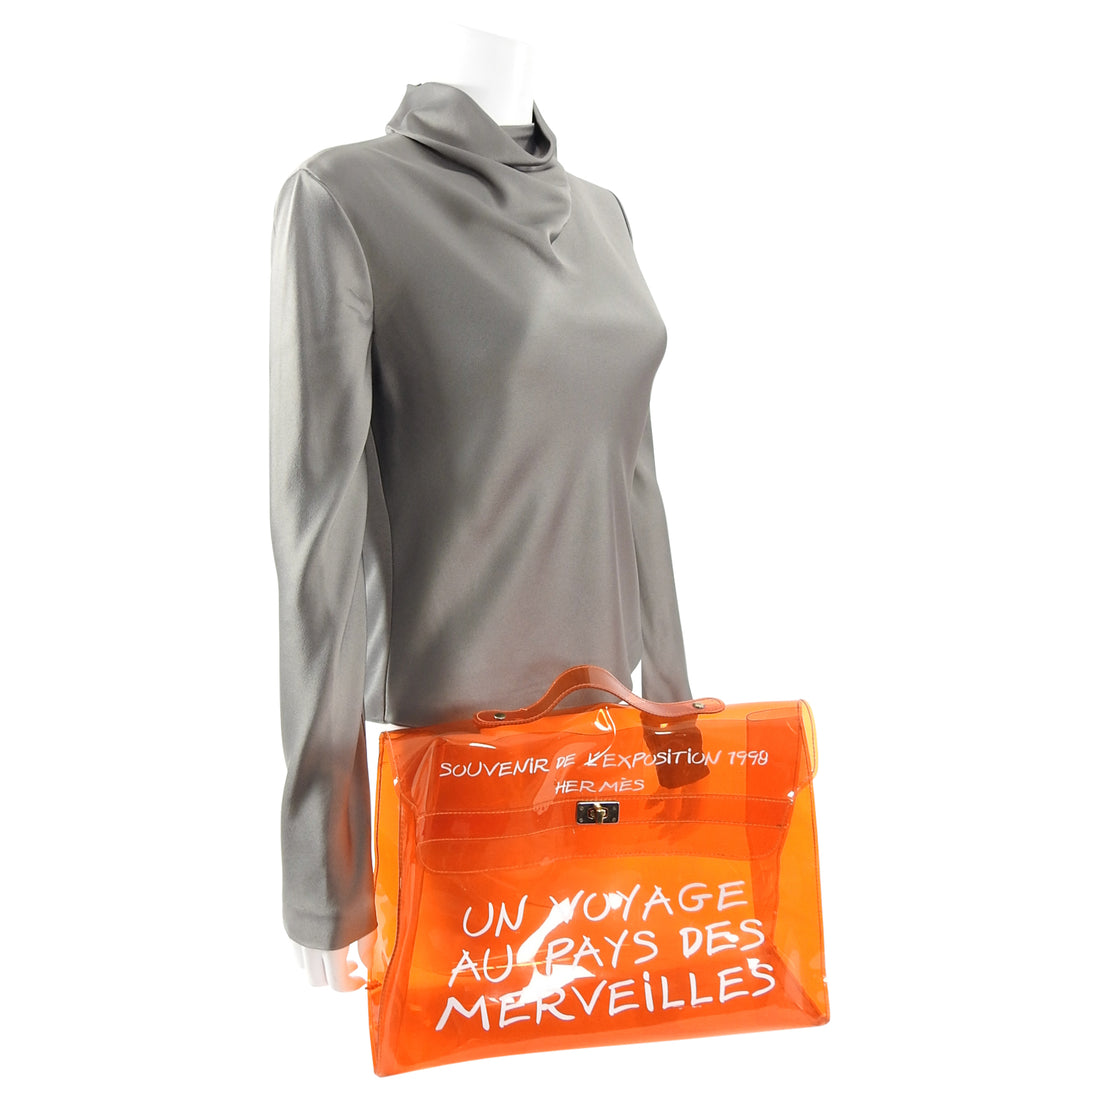 Hermès Souvenir De L'exposition 1998 Kelly Clear Shopping Orange Bag 0her126